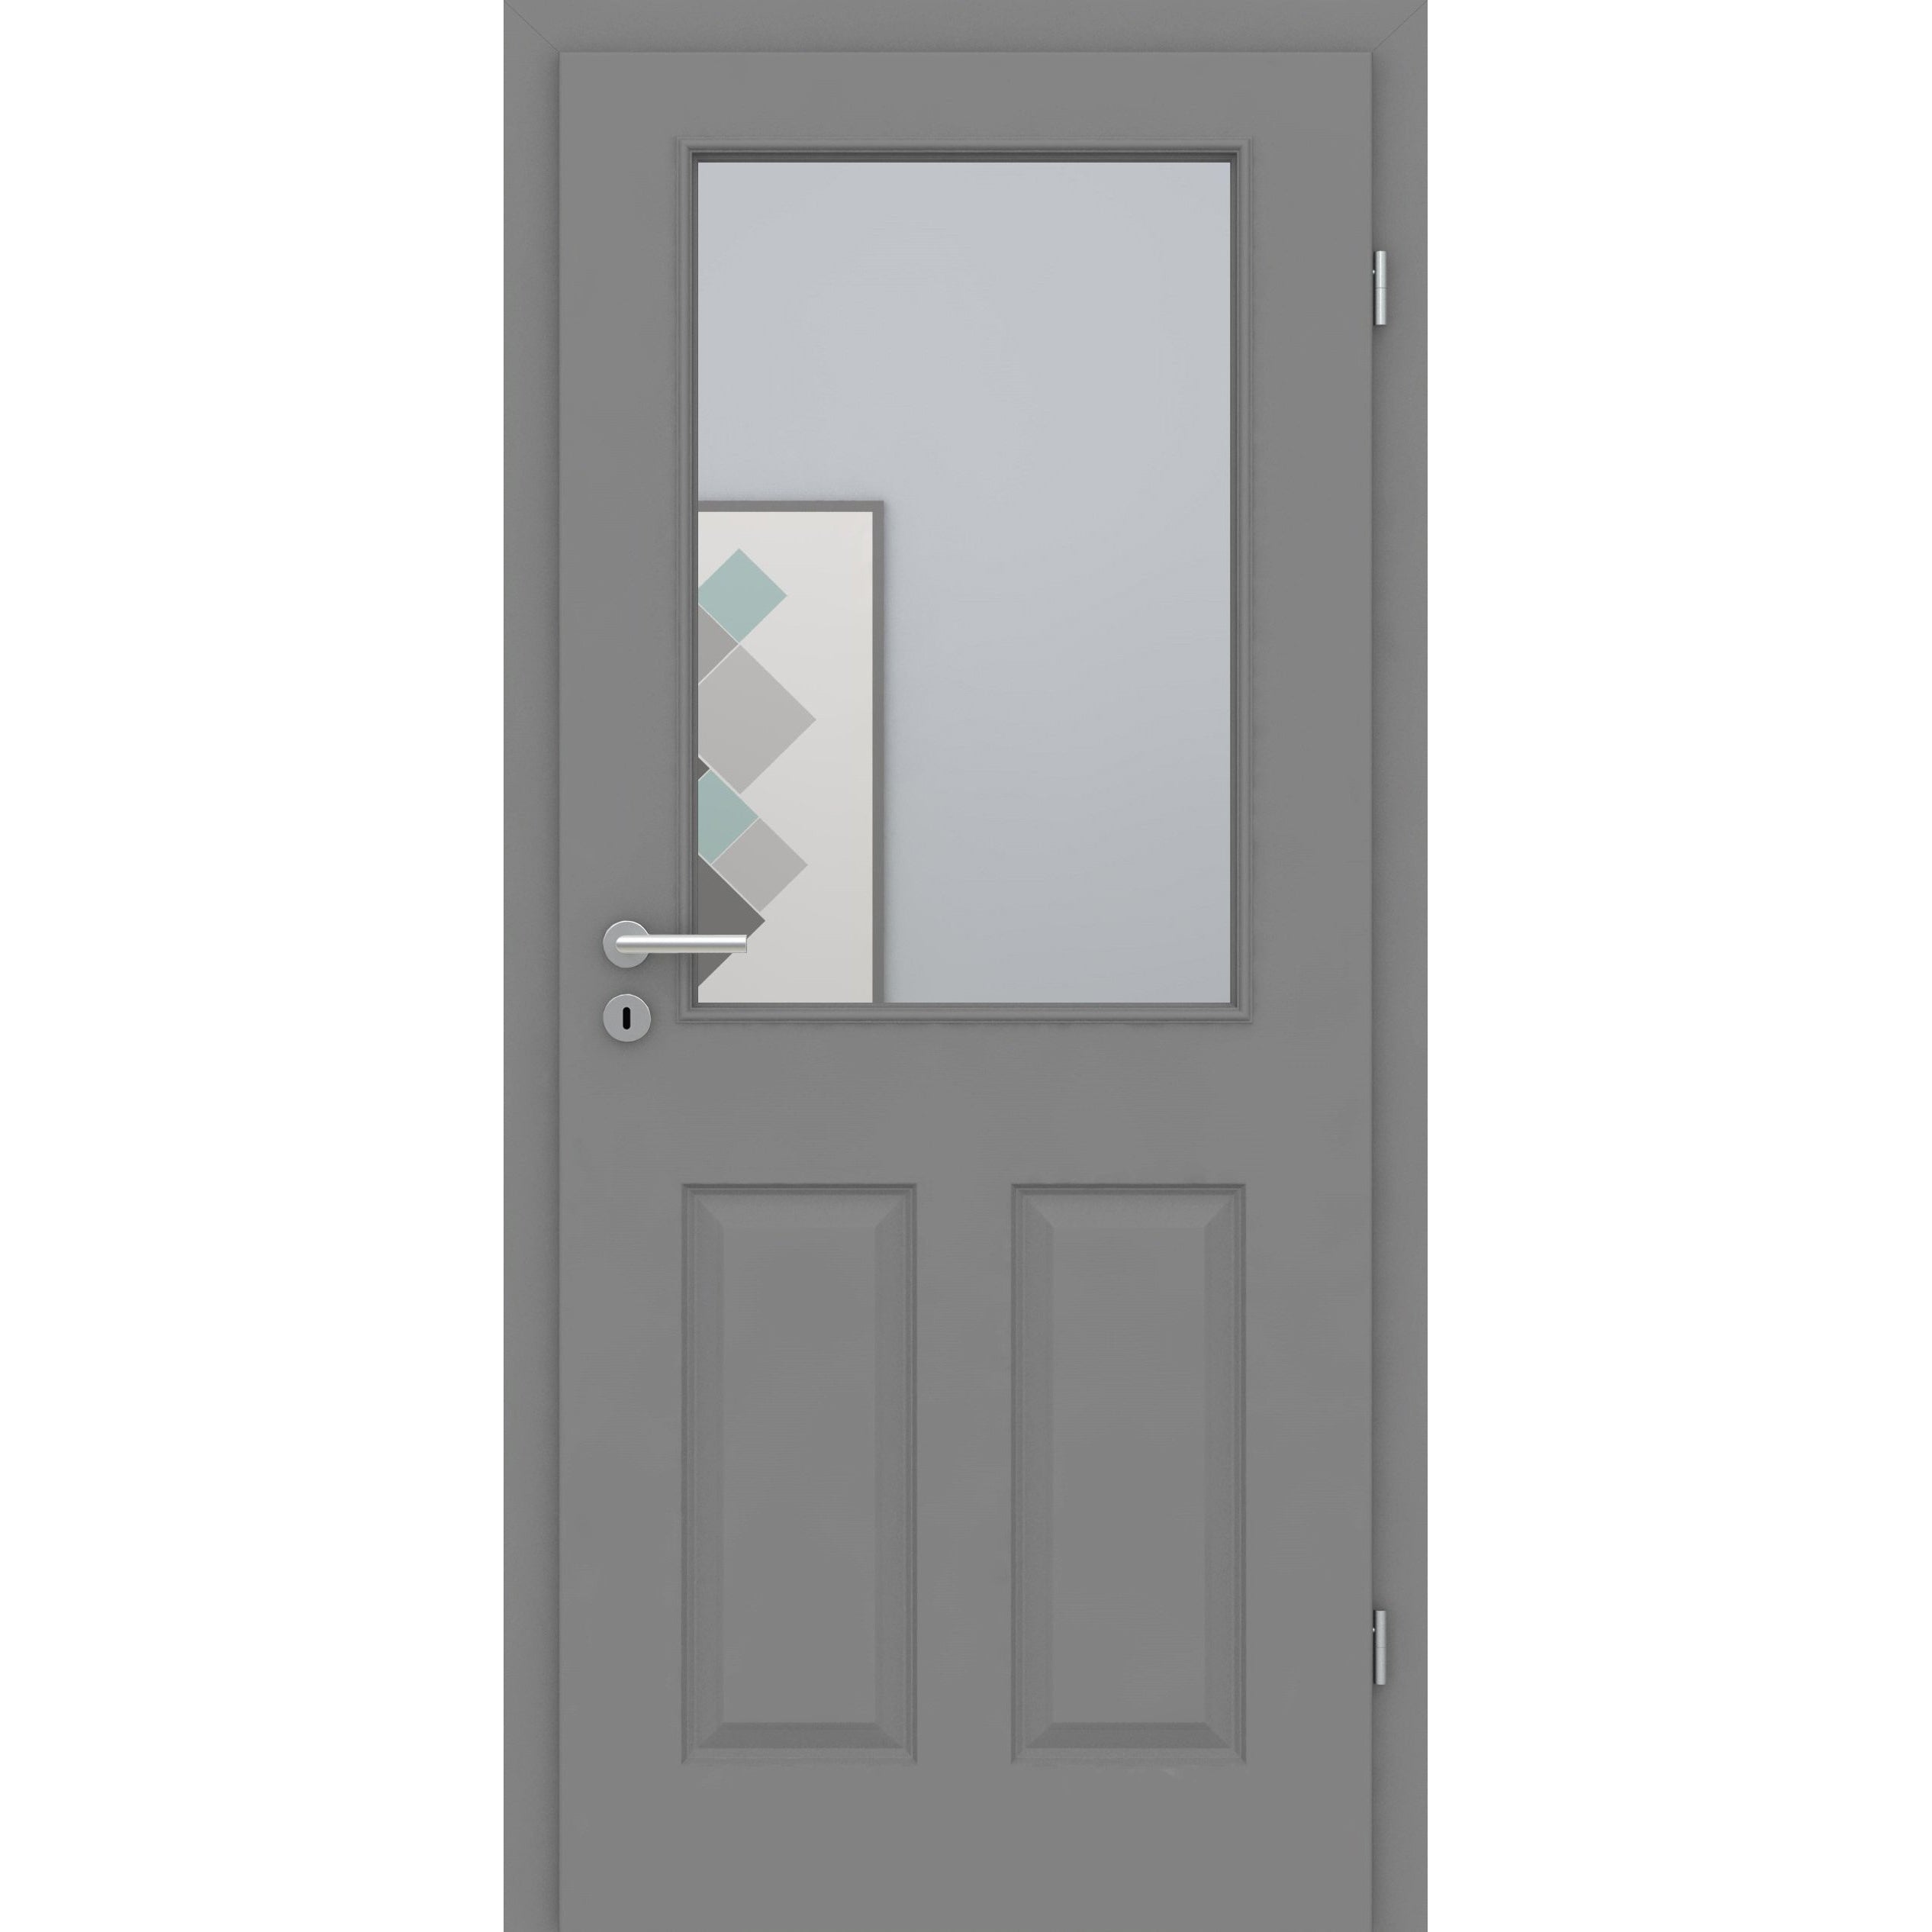 Zimmertür mit Lichtausschnitt grau 4 Kassetten Designkante - Modell Stiltür K47LA